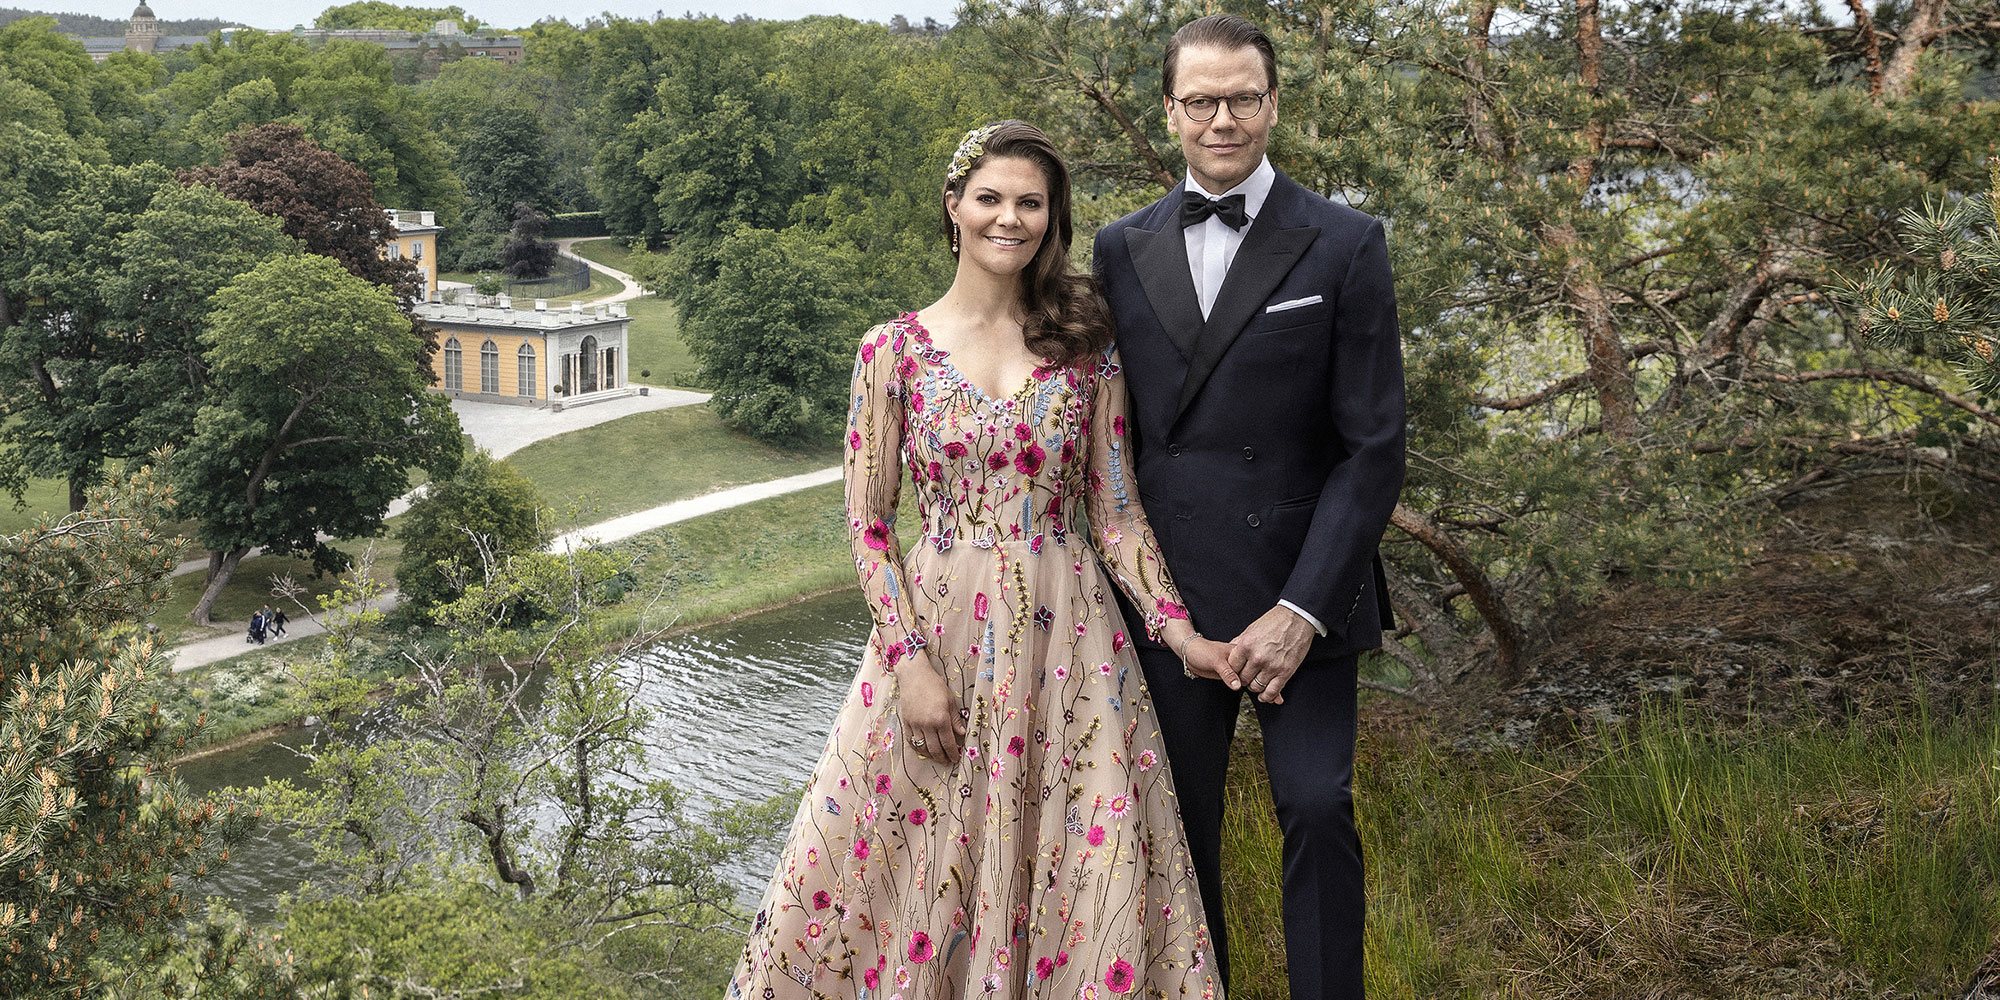 10 años de la boda de Victoria y Daniel de Suecia: celebración pública, privada y 'contraprogramación' a Magdalena de Suecia